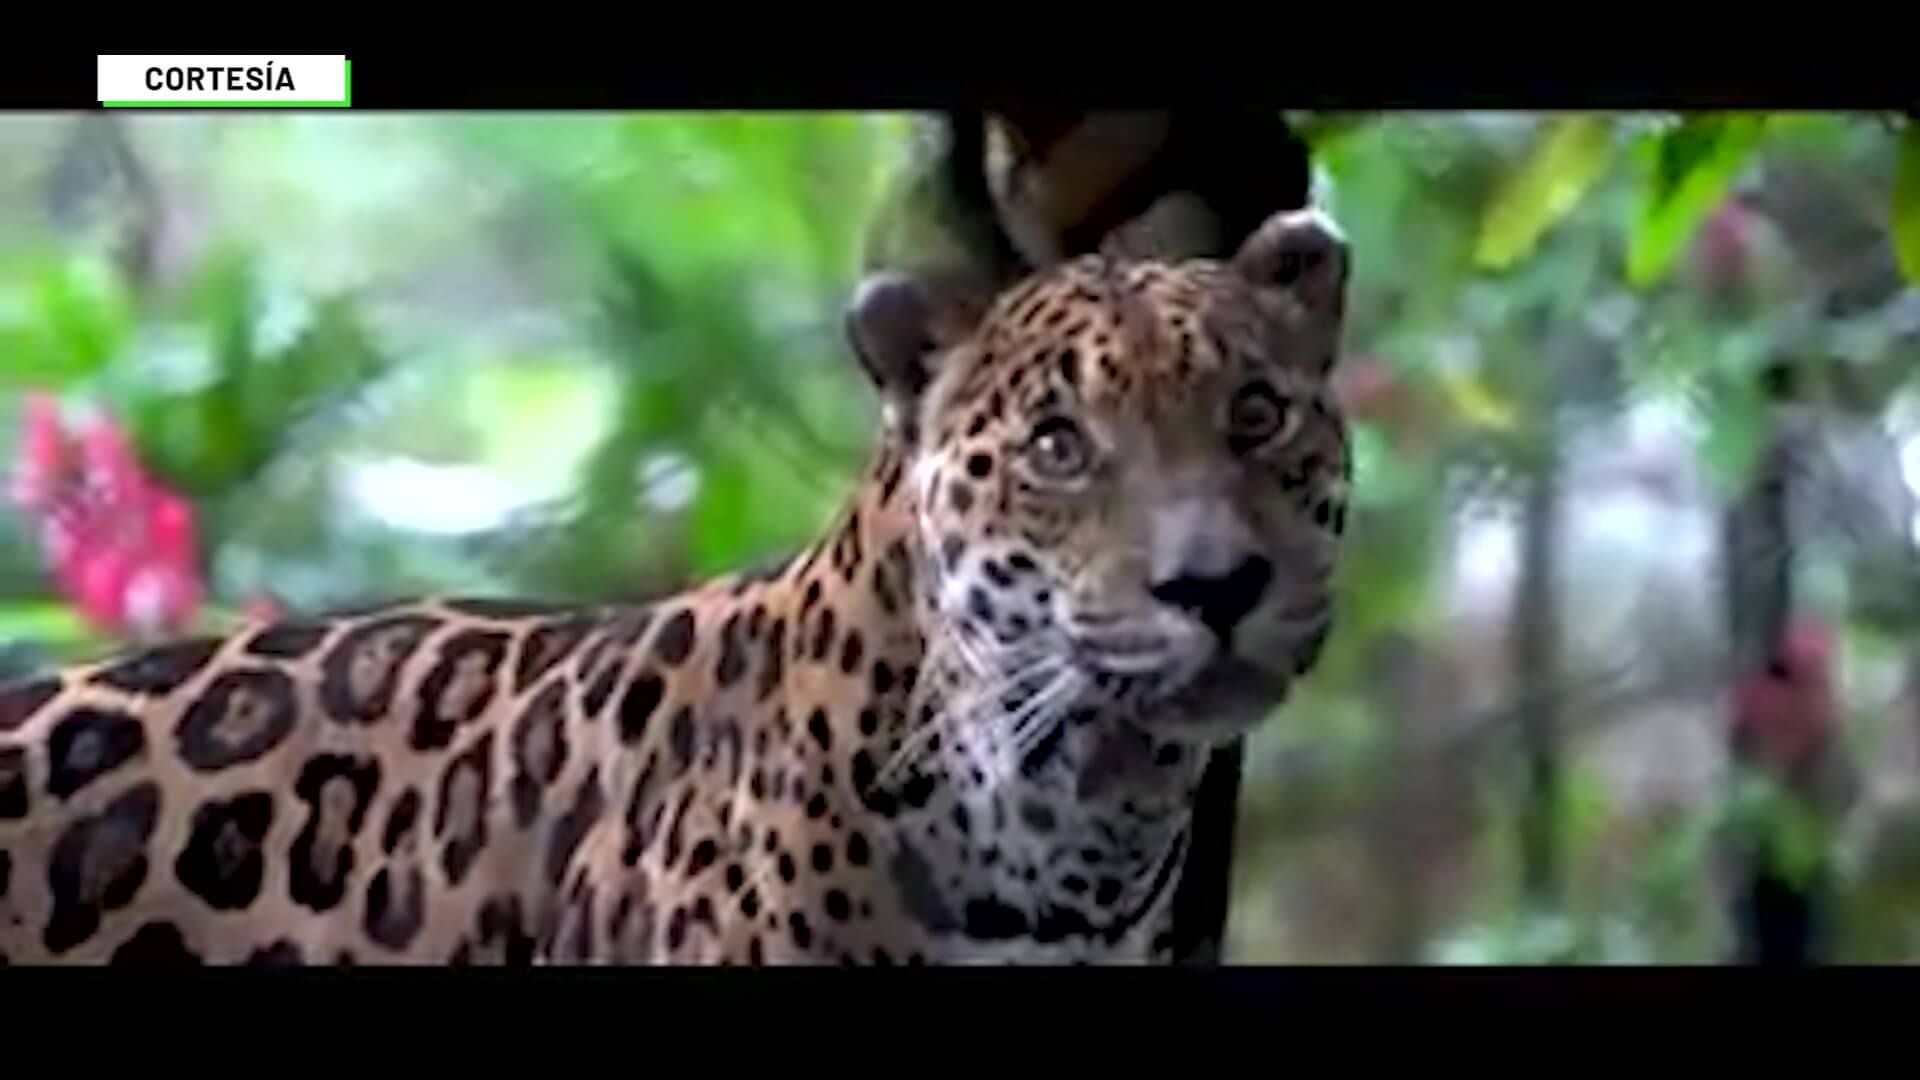 Recompensa de $20 millones por asesinos de jaguares